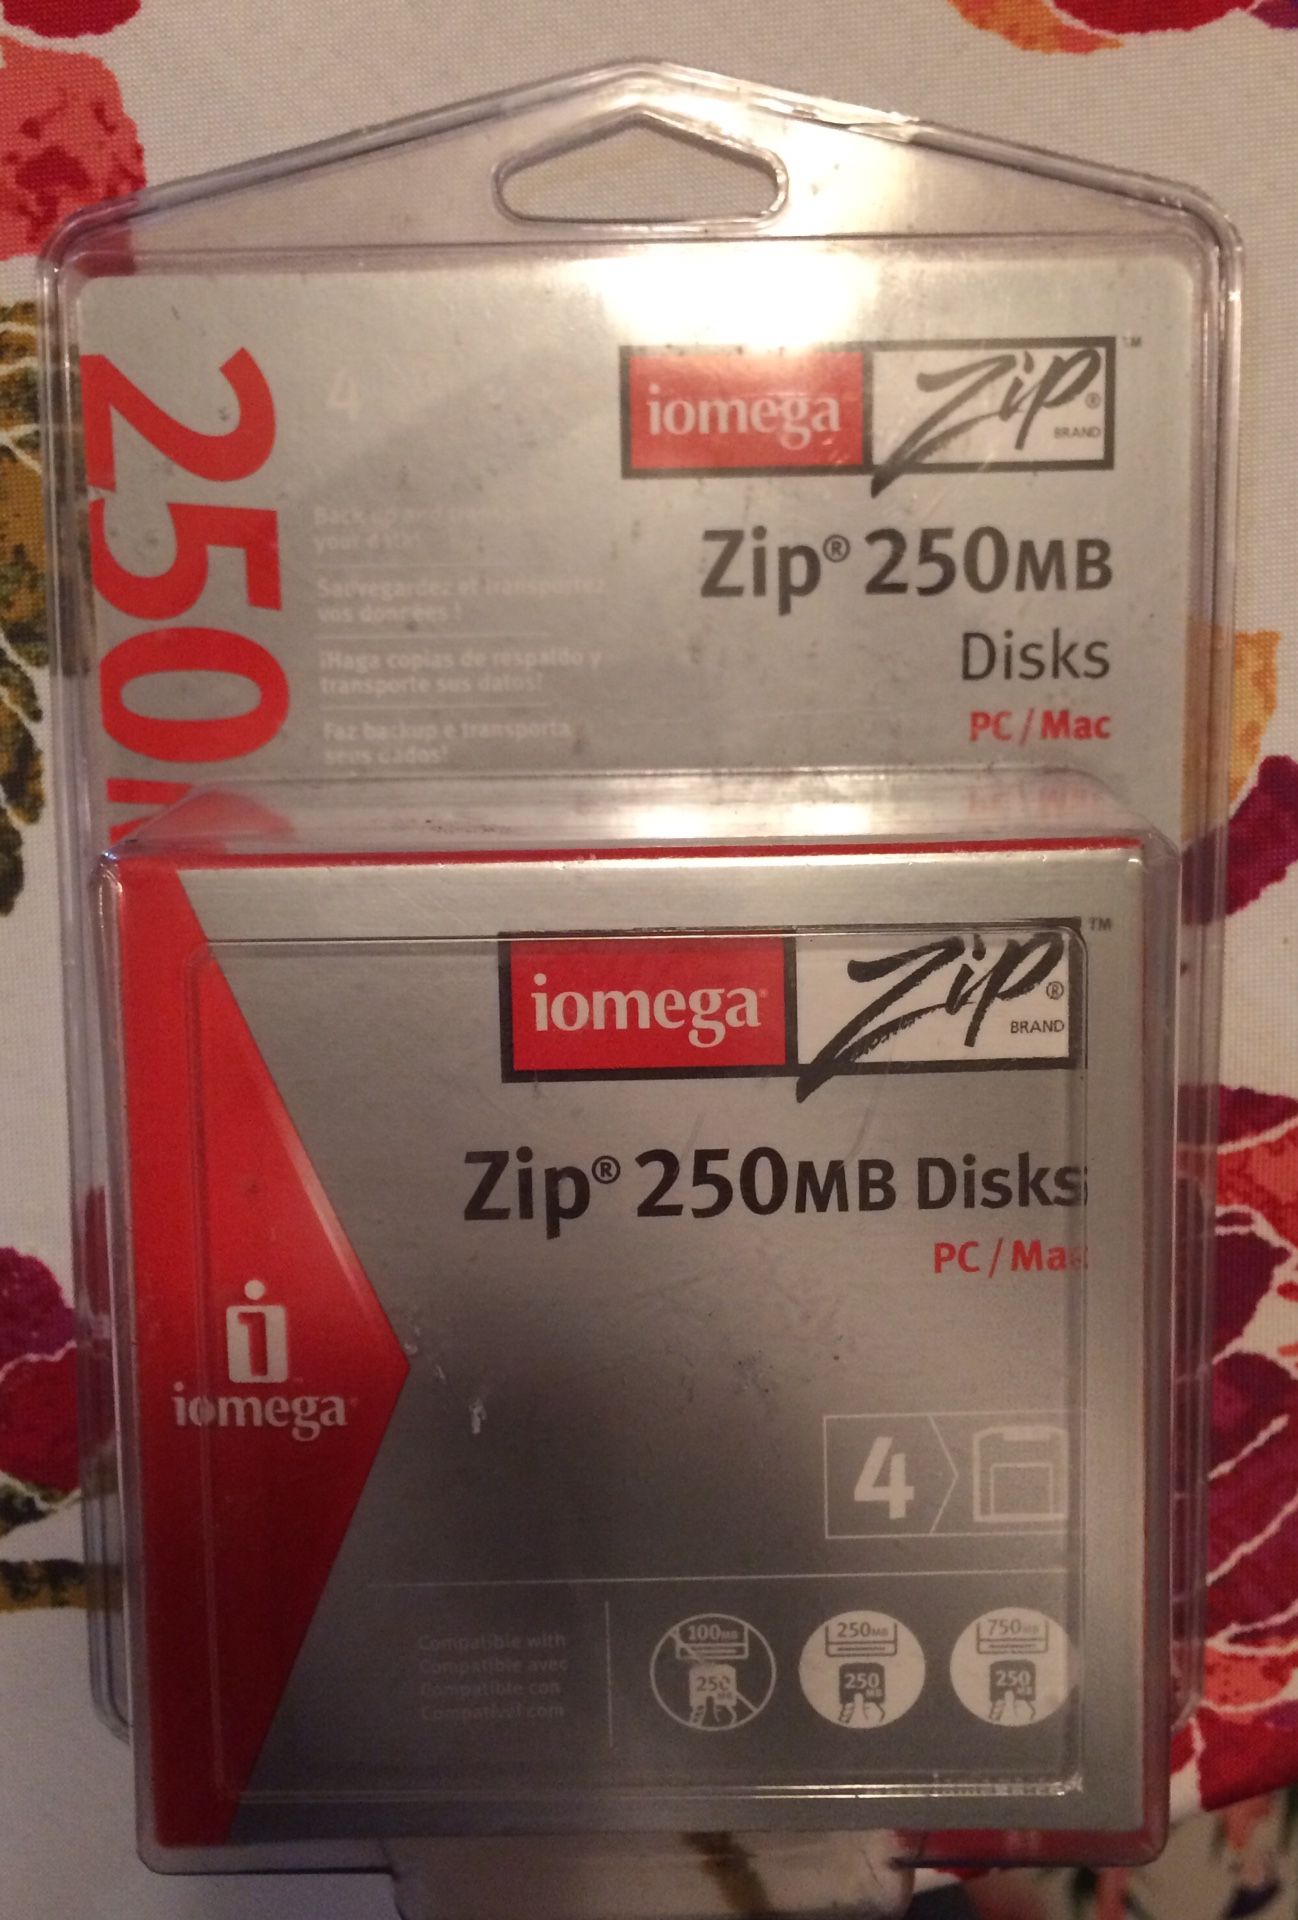 IOMEGA Zip Disks 250MB PC/MAC Pack Of 4